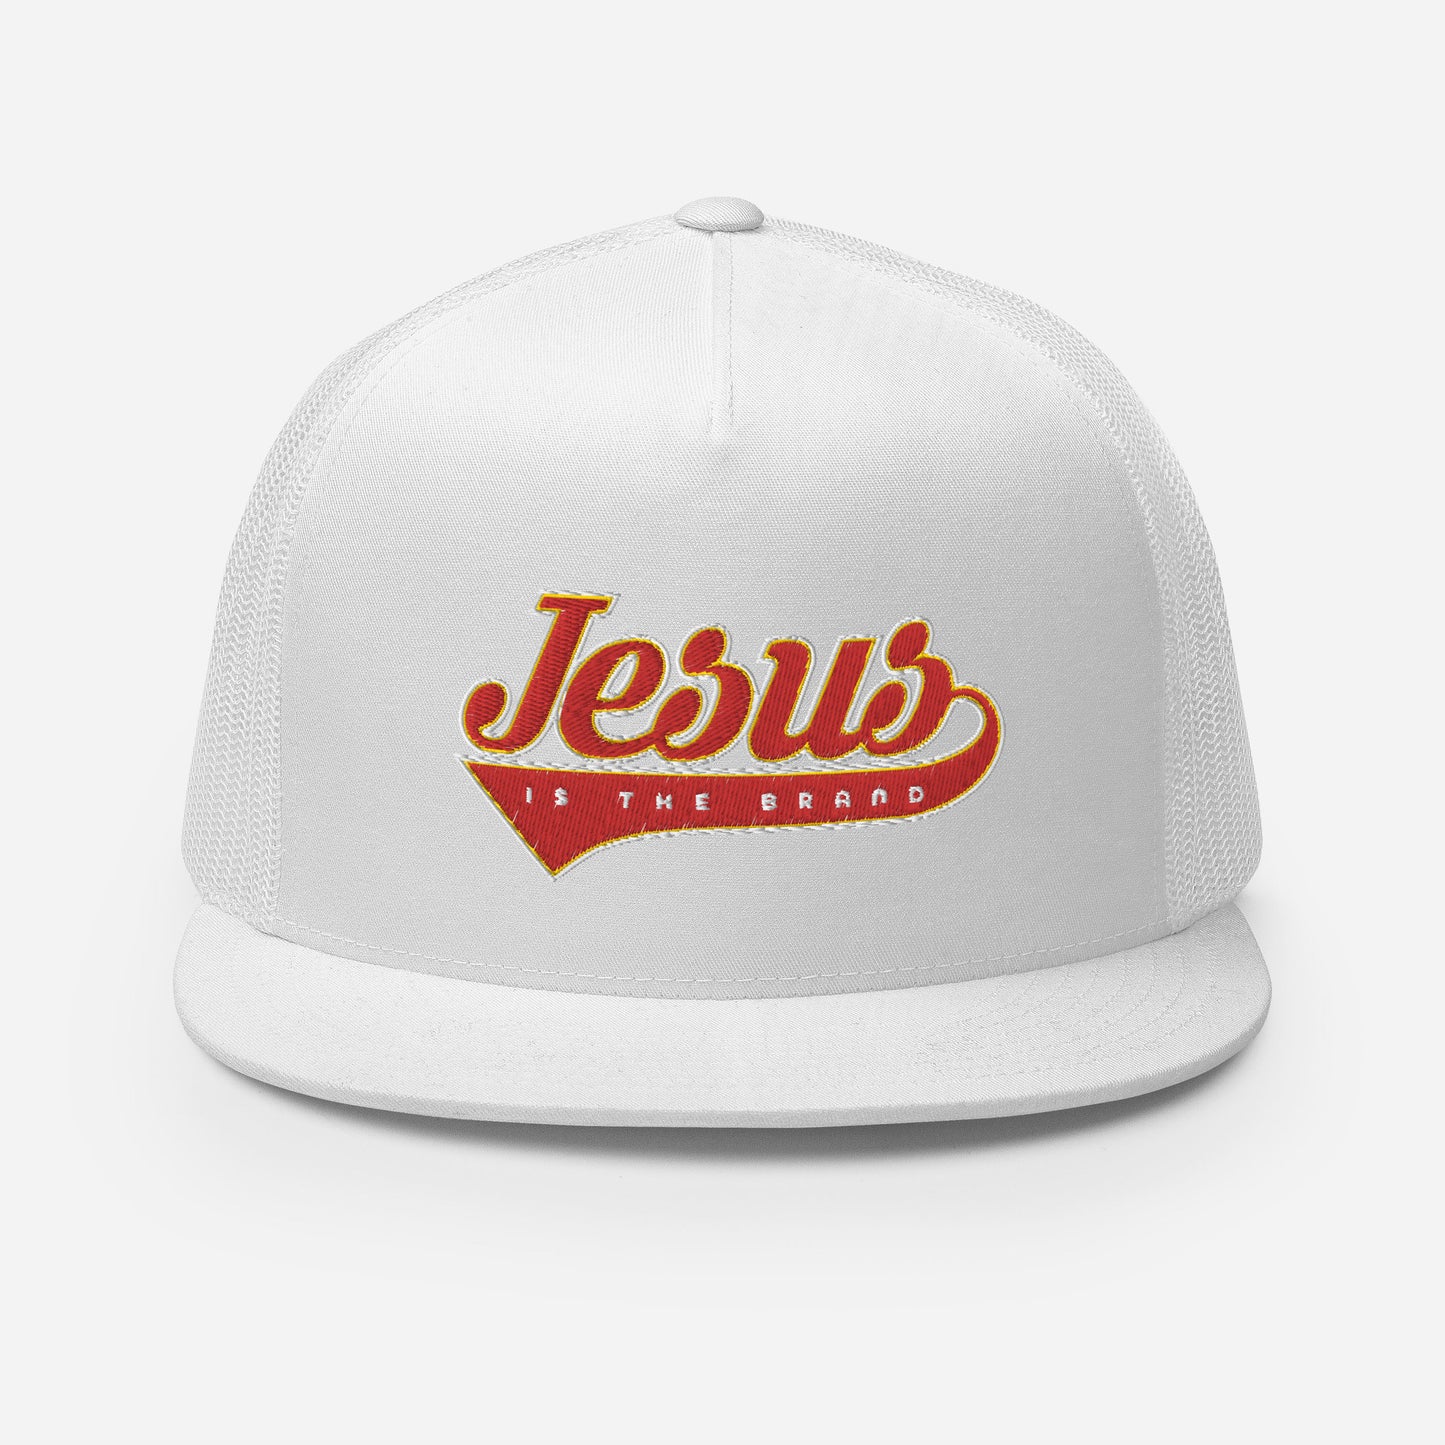 Jesus Is The Brand Trucker Cap